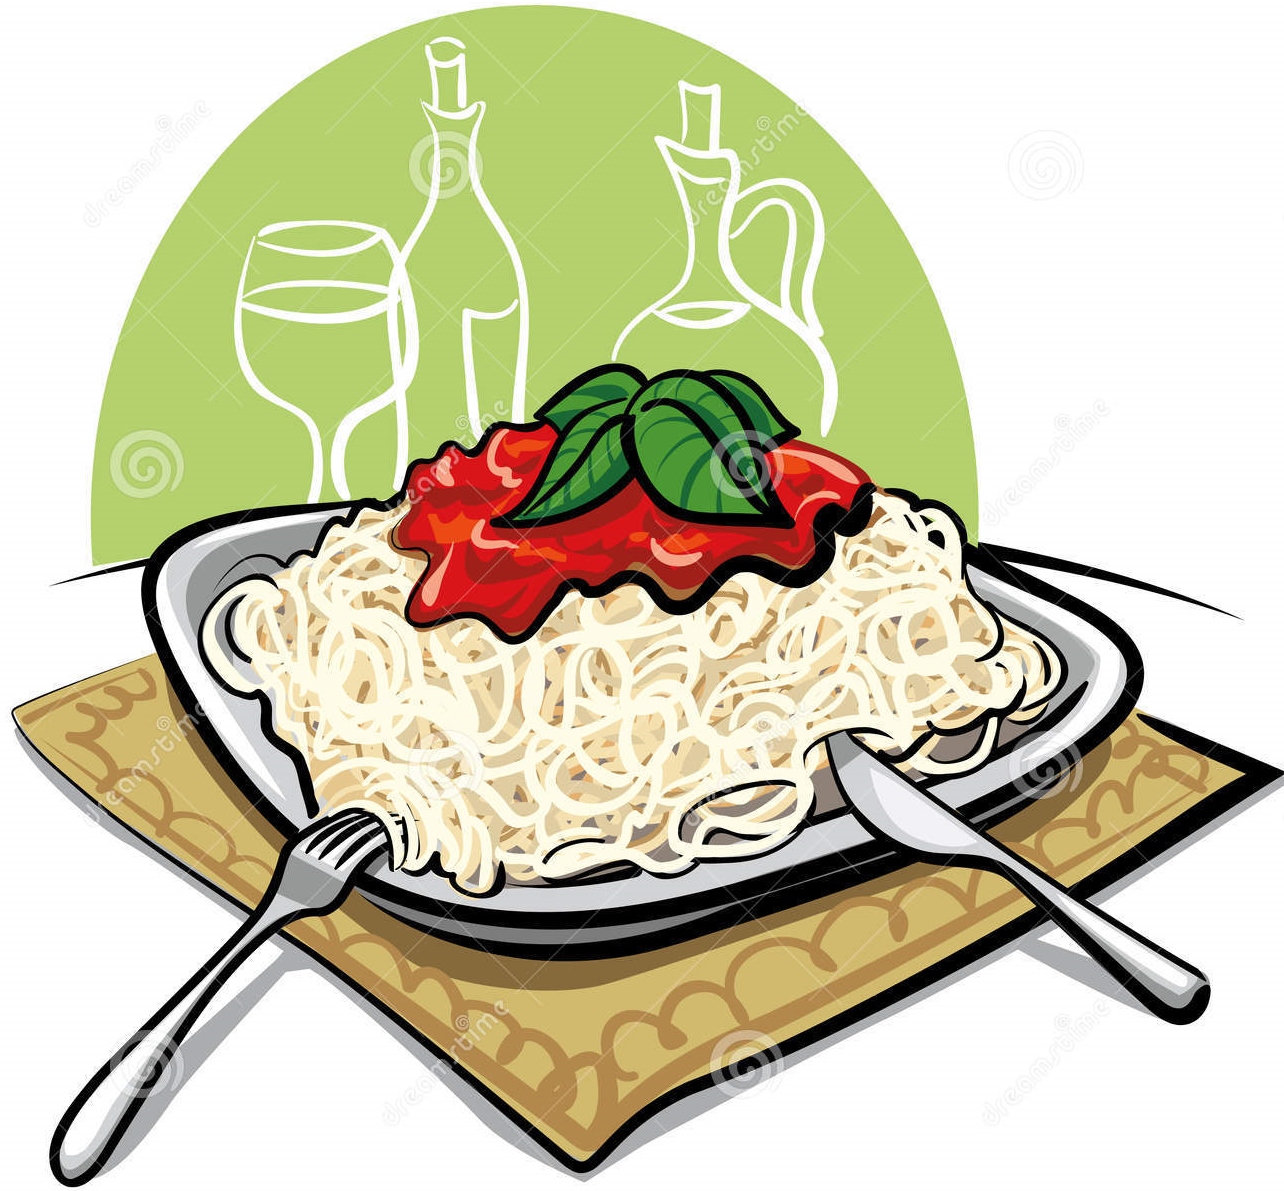 Spaghetti dinner fundraiser clipart jpg